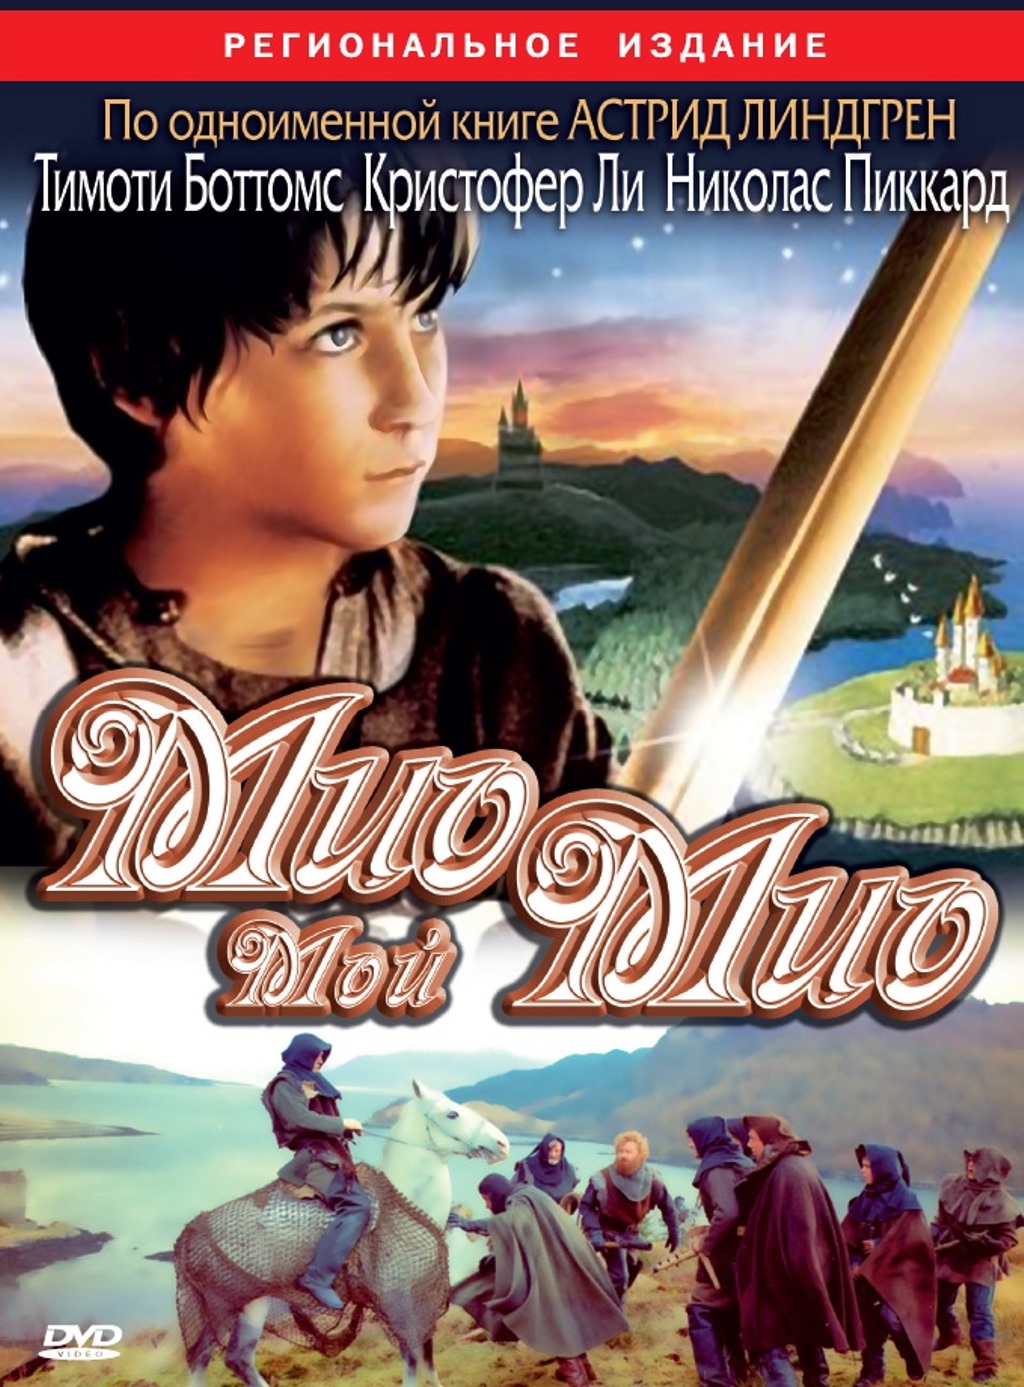 Мио, мой Мио (региональное издание) (DVD)